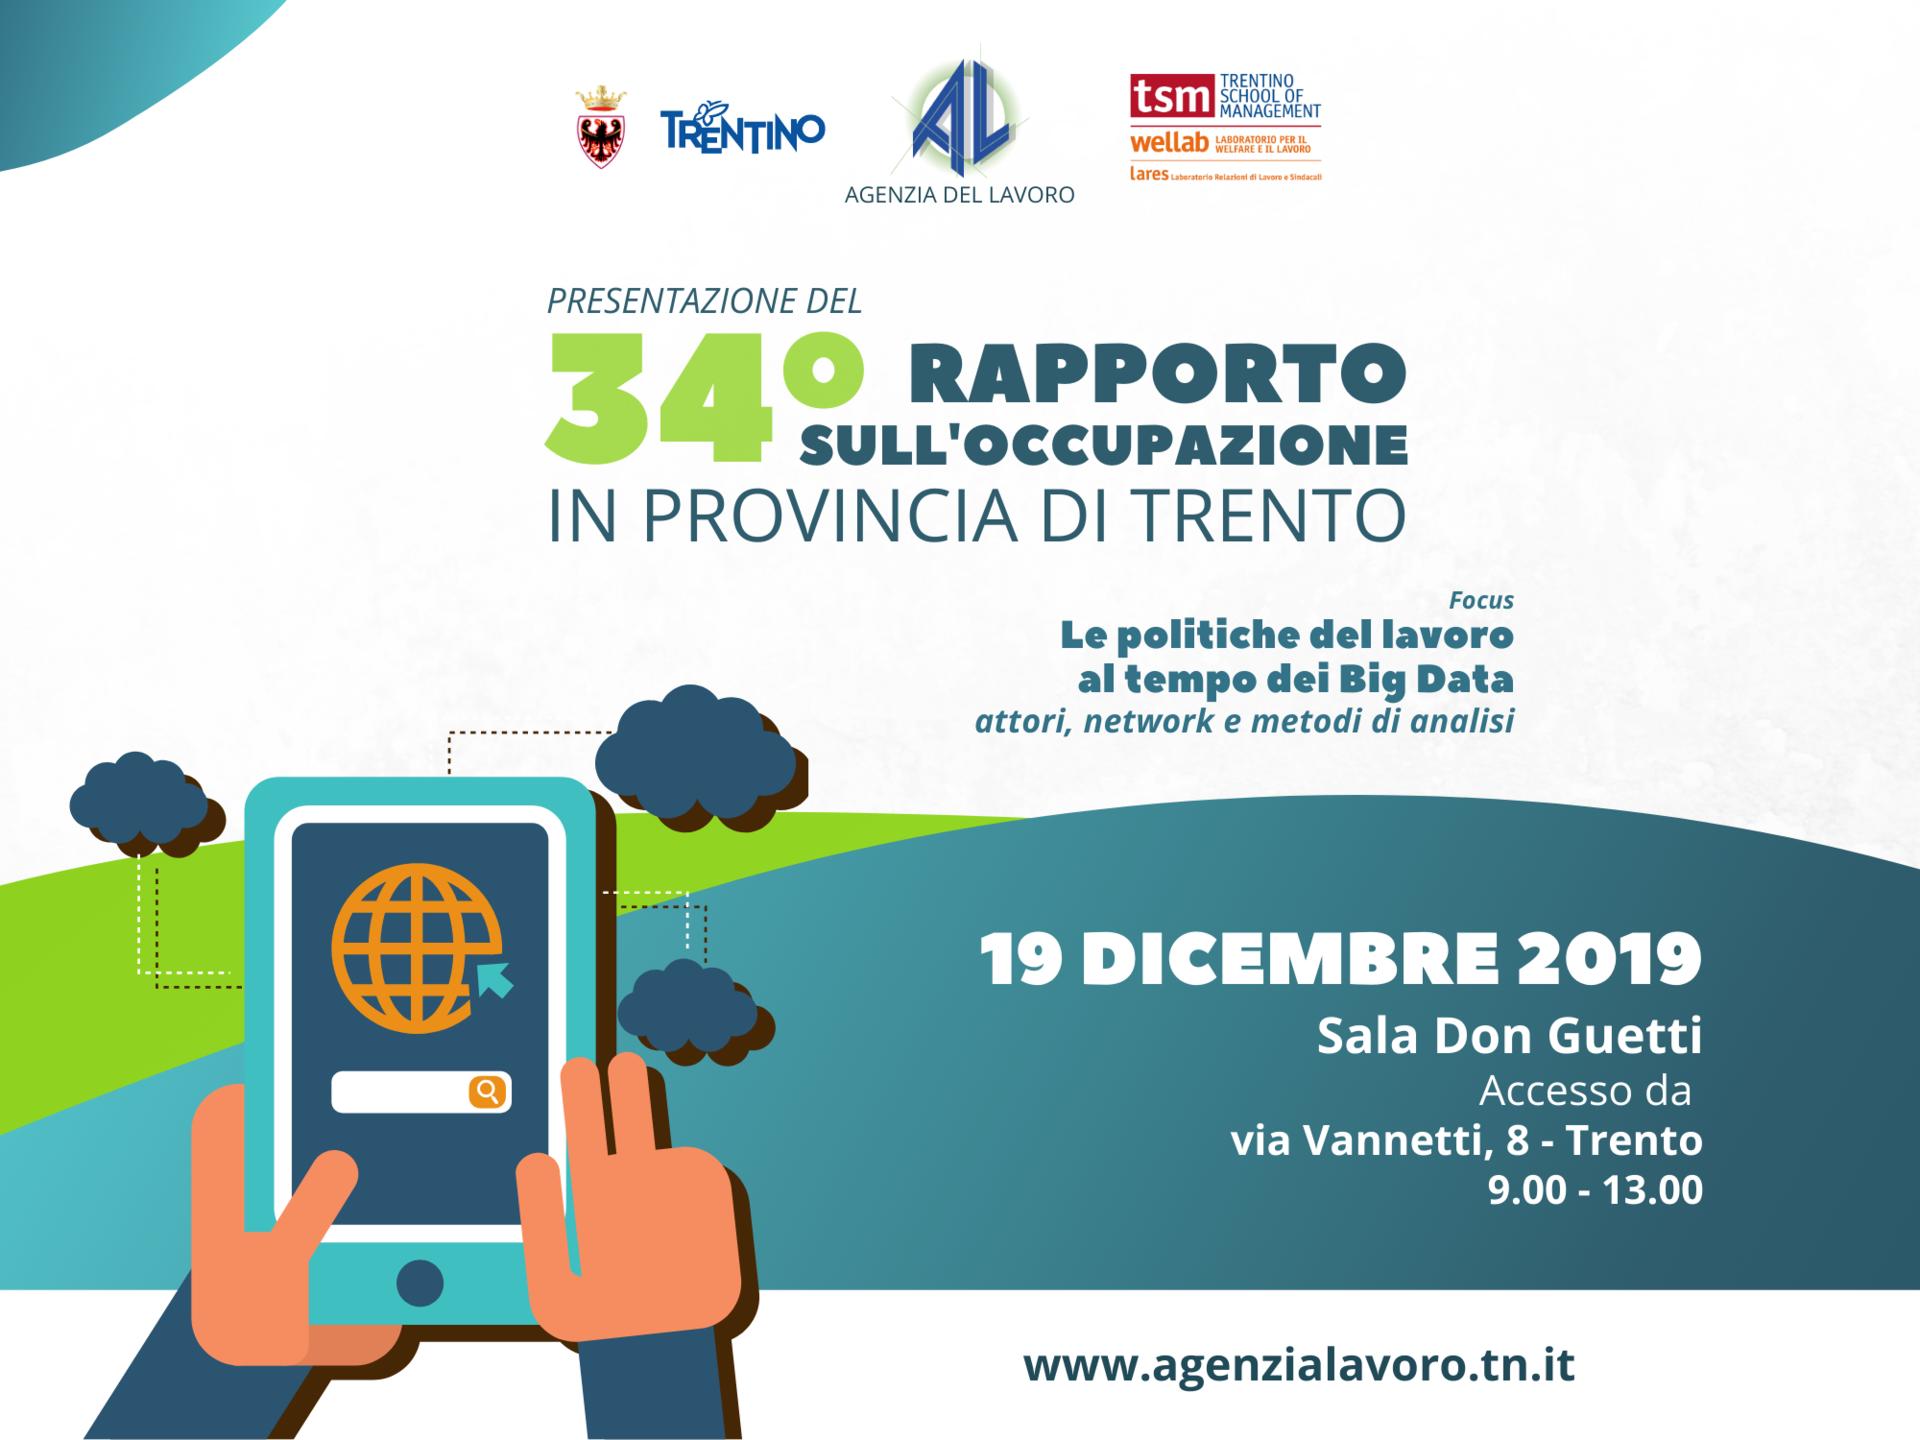 Giovedì 19 dicembre 2019, dalle ore 9.00 alle 13.00, nella sala Don Guetti in via Vannetti, 8 a Trento, sarà presentato il 34° “Rapporto sull’occupazione in provincia di Trento” con un focus sulle politiche del lavoro al tempo dei Big Data.